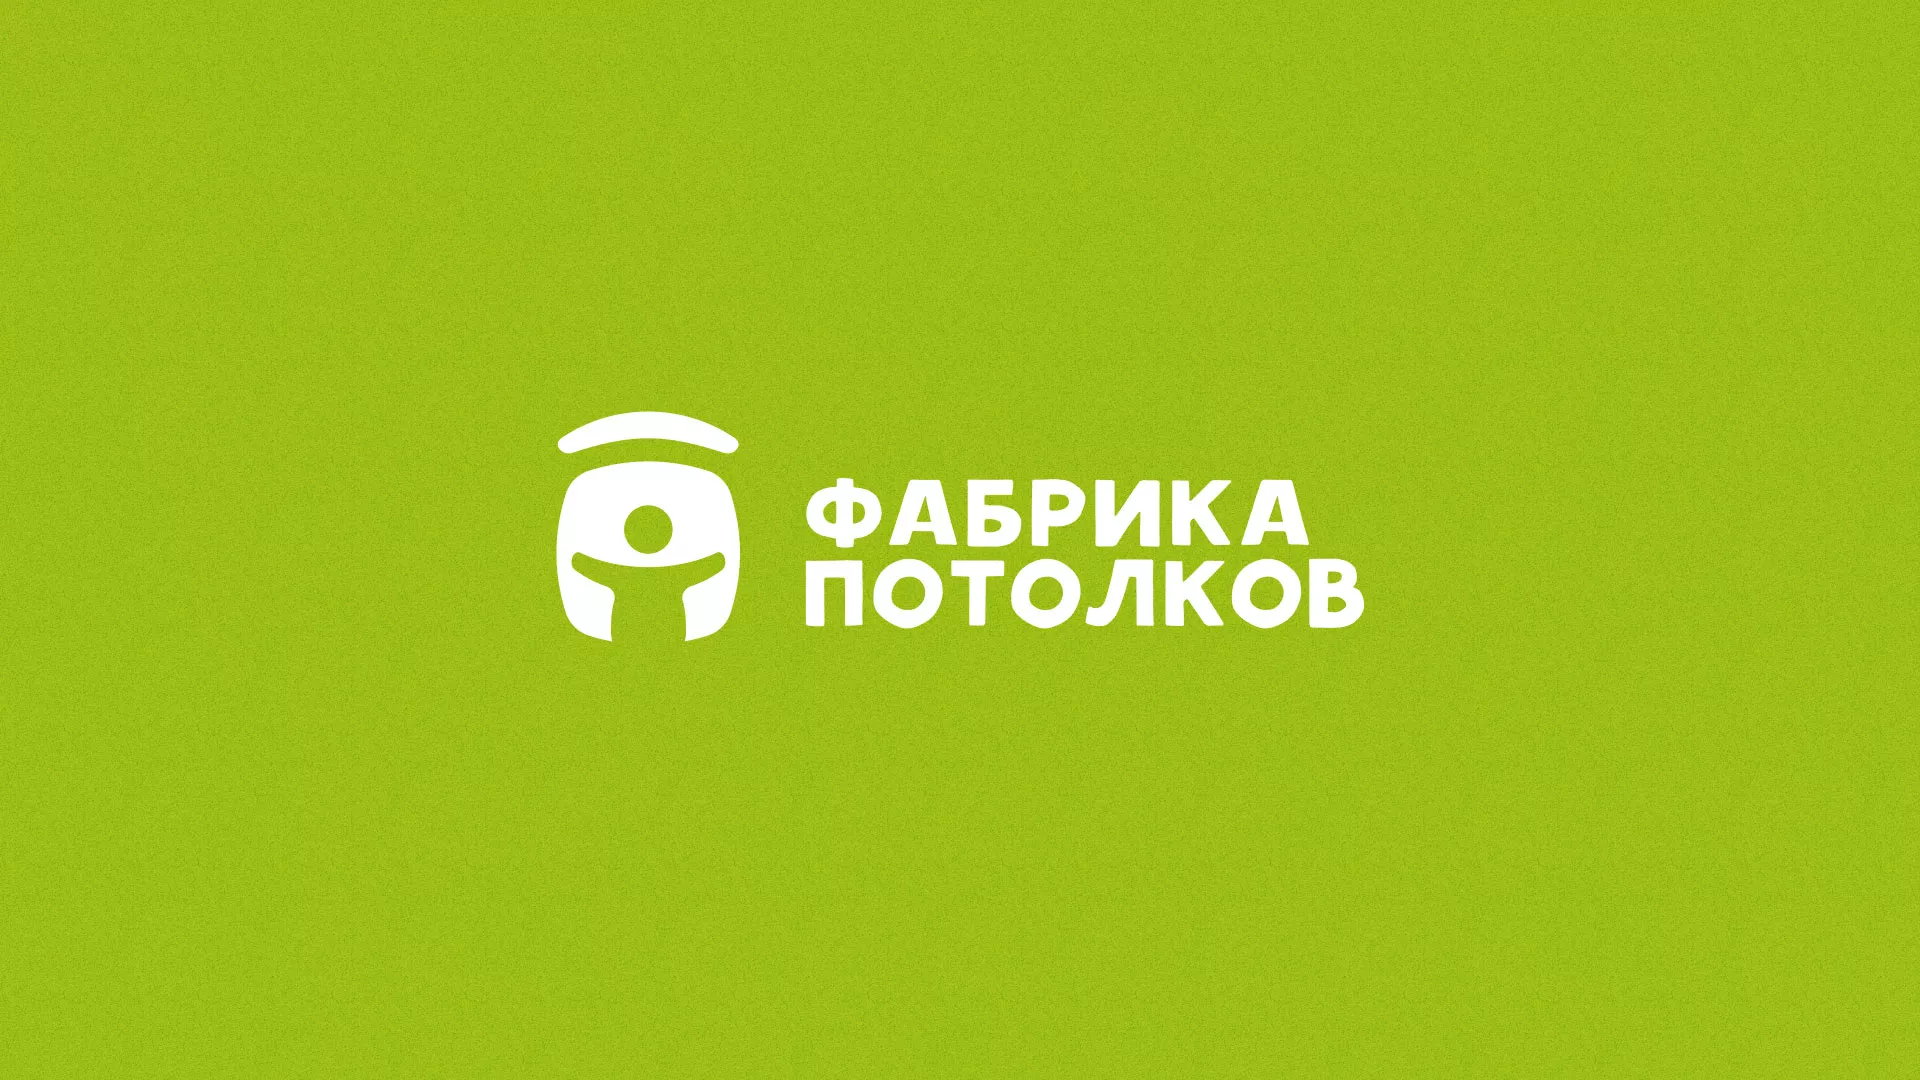 Разработка логотипа для производства натяжных потолков в Павлово